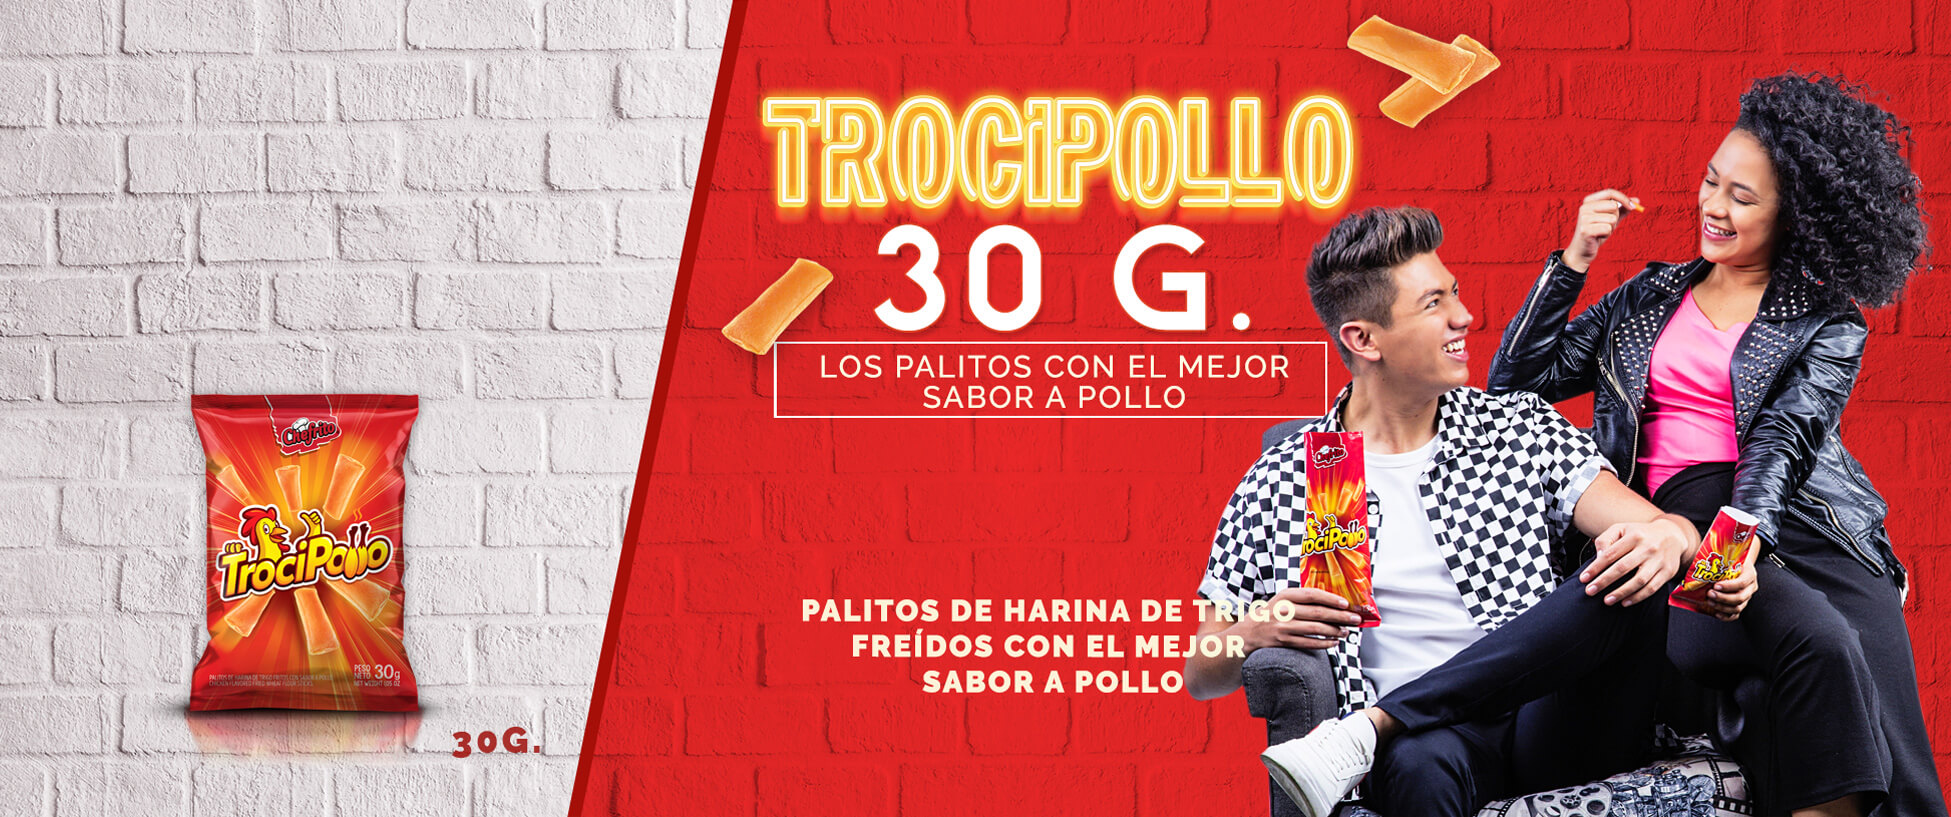 Trocipollo30